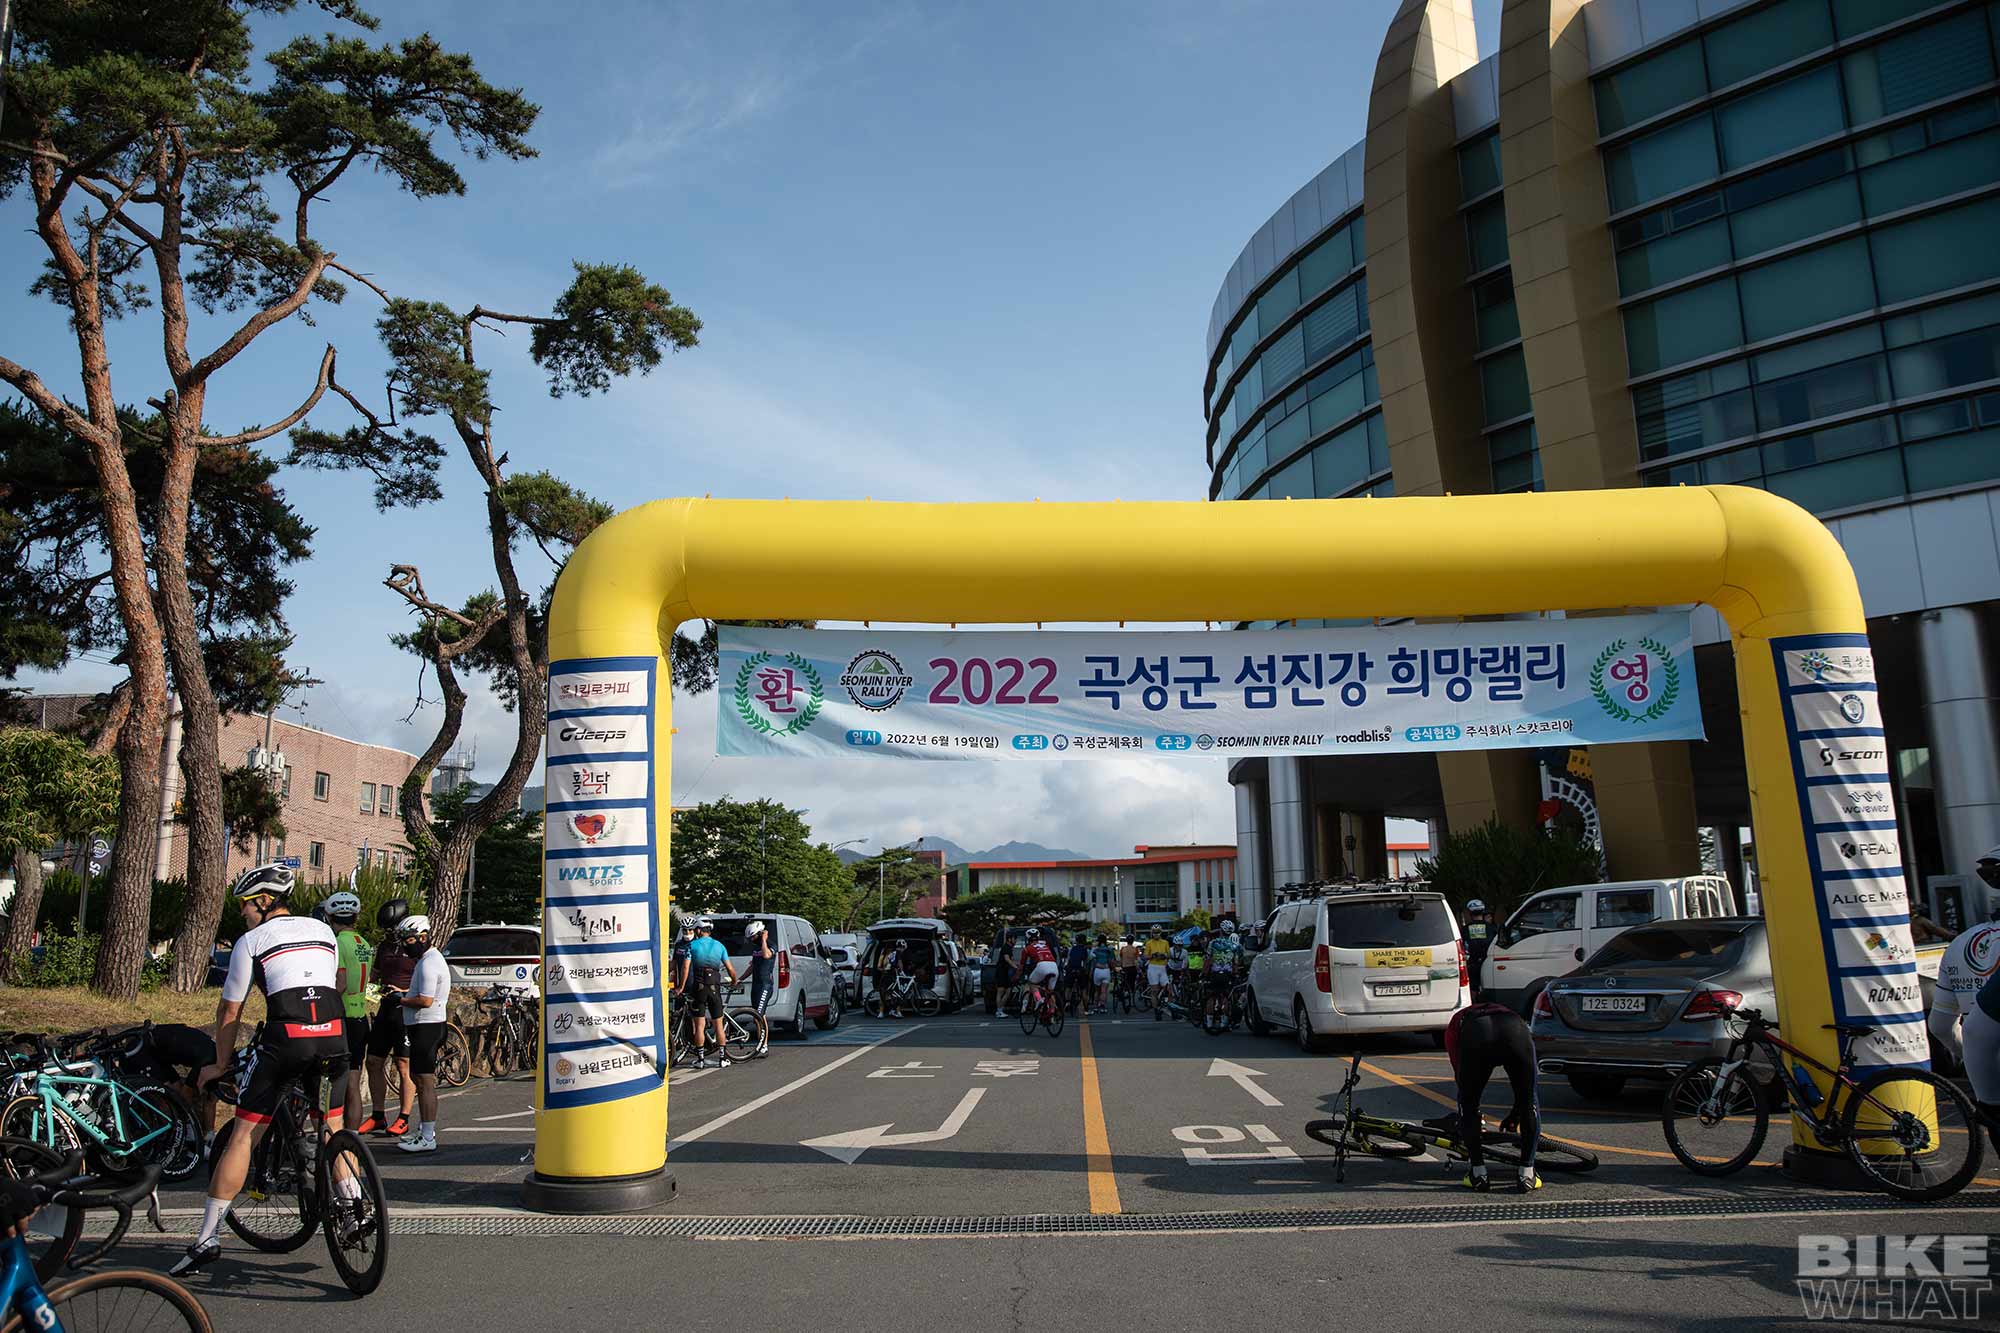 news_2022_seomjin_river_rally_1